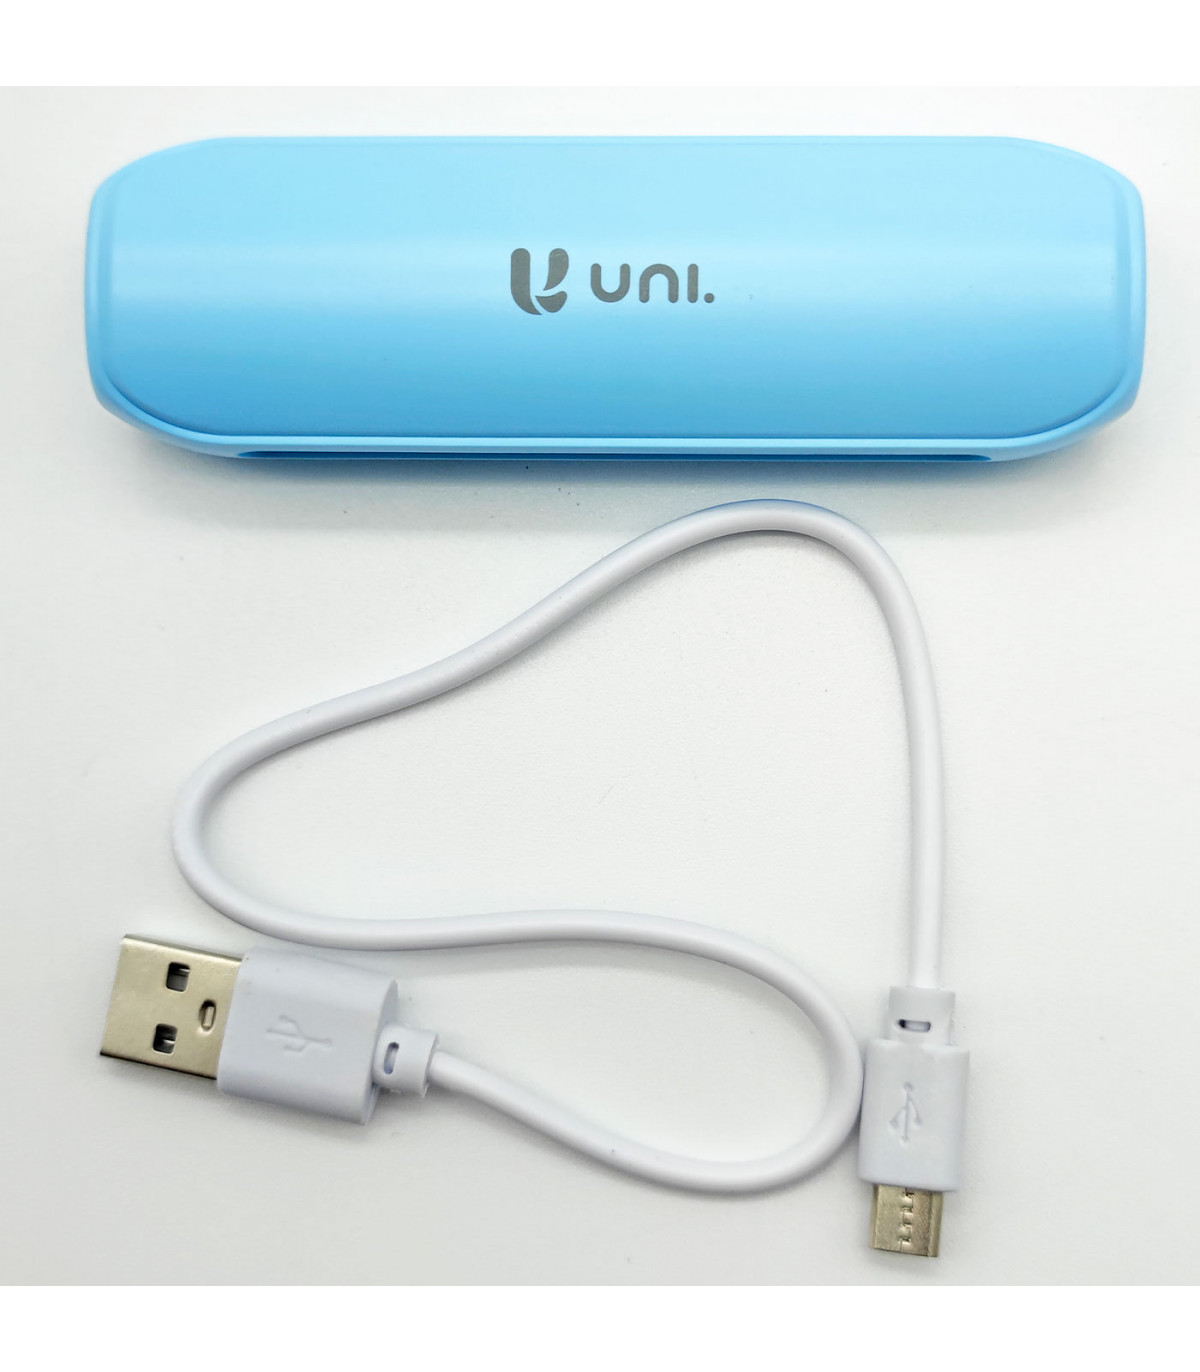 Batería externa azul 2600 mAh, 1.0A, cable micro-USB, indicador carga LED,  móvil, tablet, mp3, e-book, compatible con Xiaomi, Hu